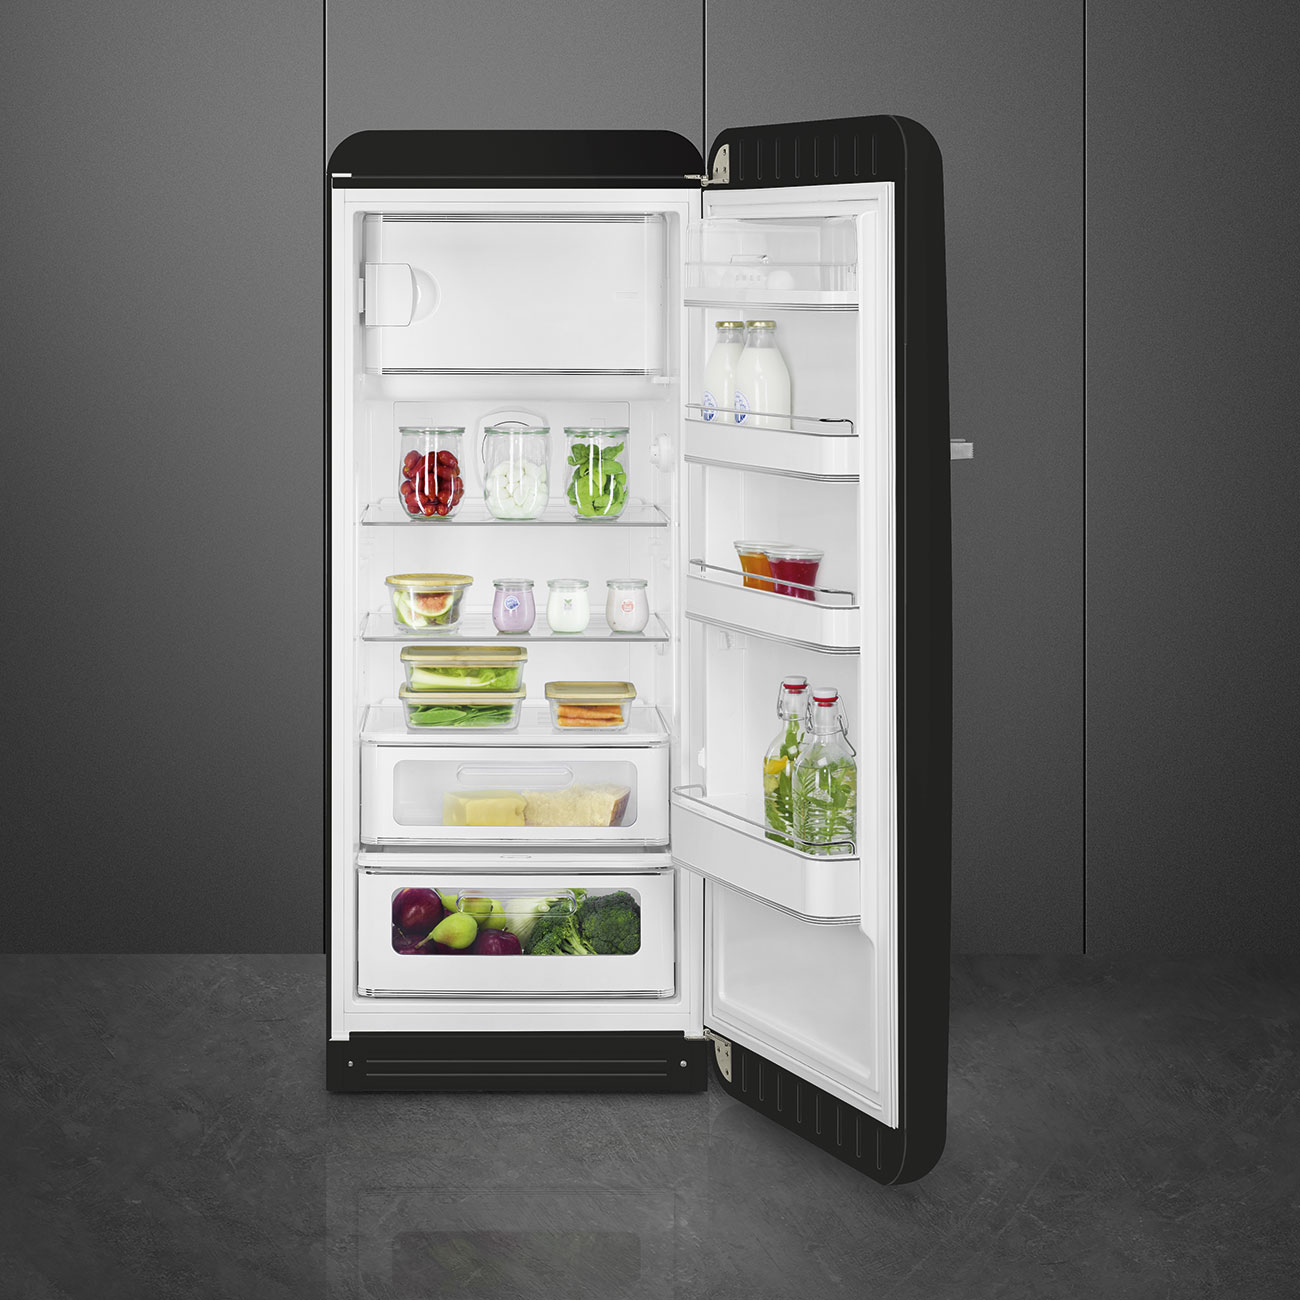 Black refrigerator - Smeg_10